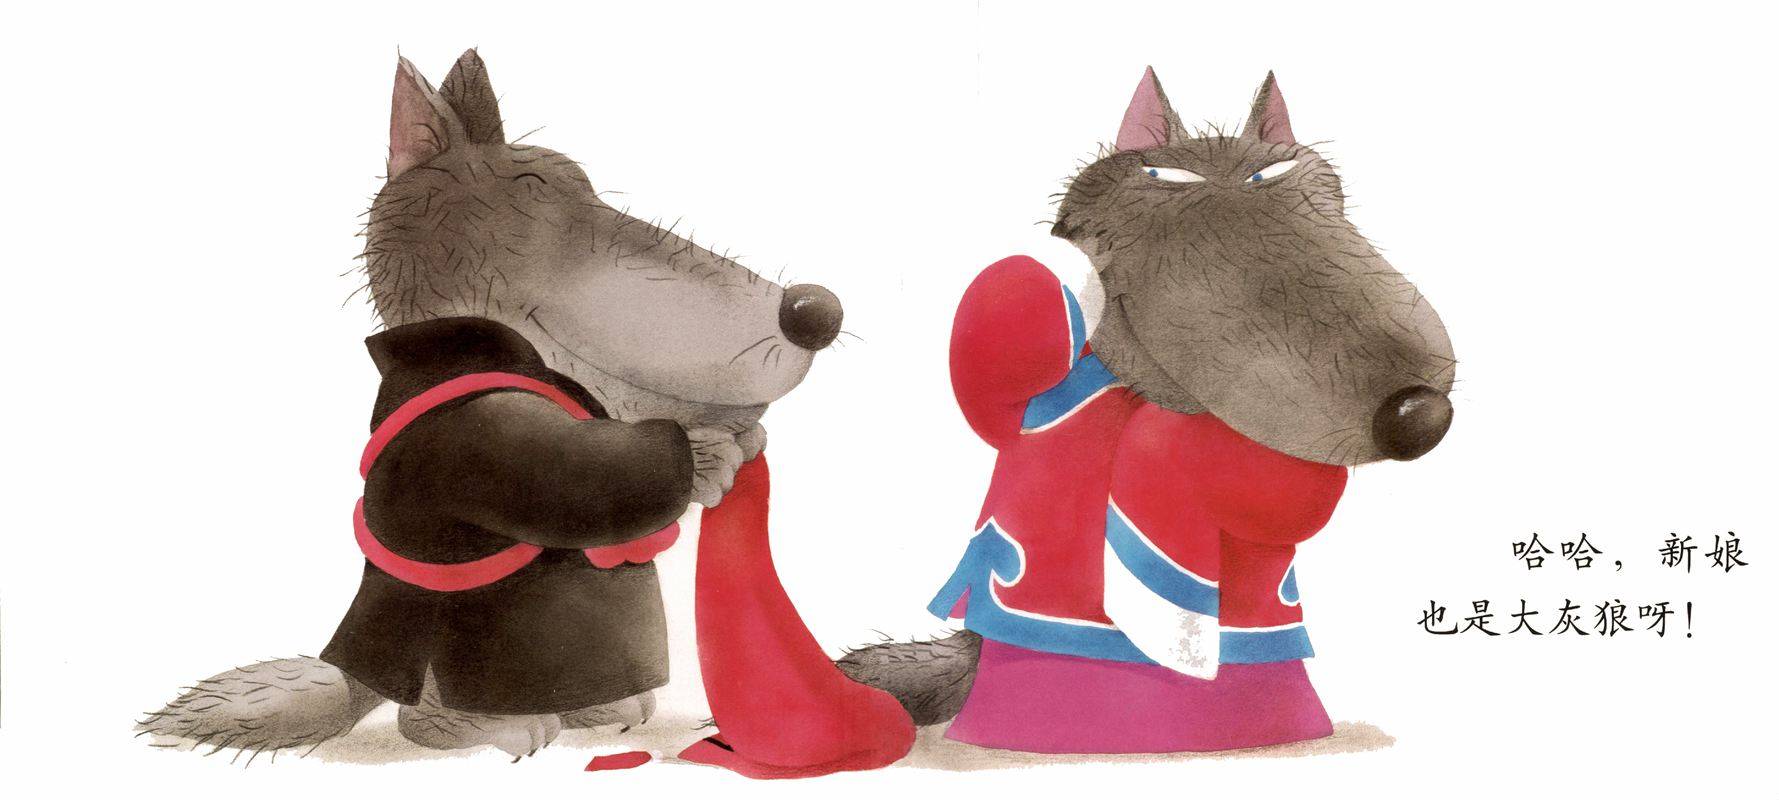 《小红帽与大灰狼》-儿童插画风格插画设计作品-设计人才灵活用工-设计DNA